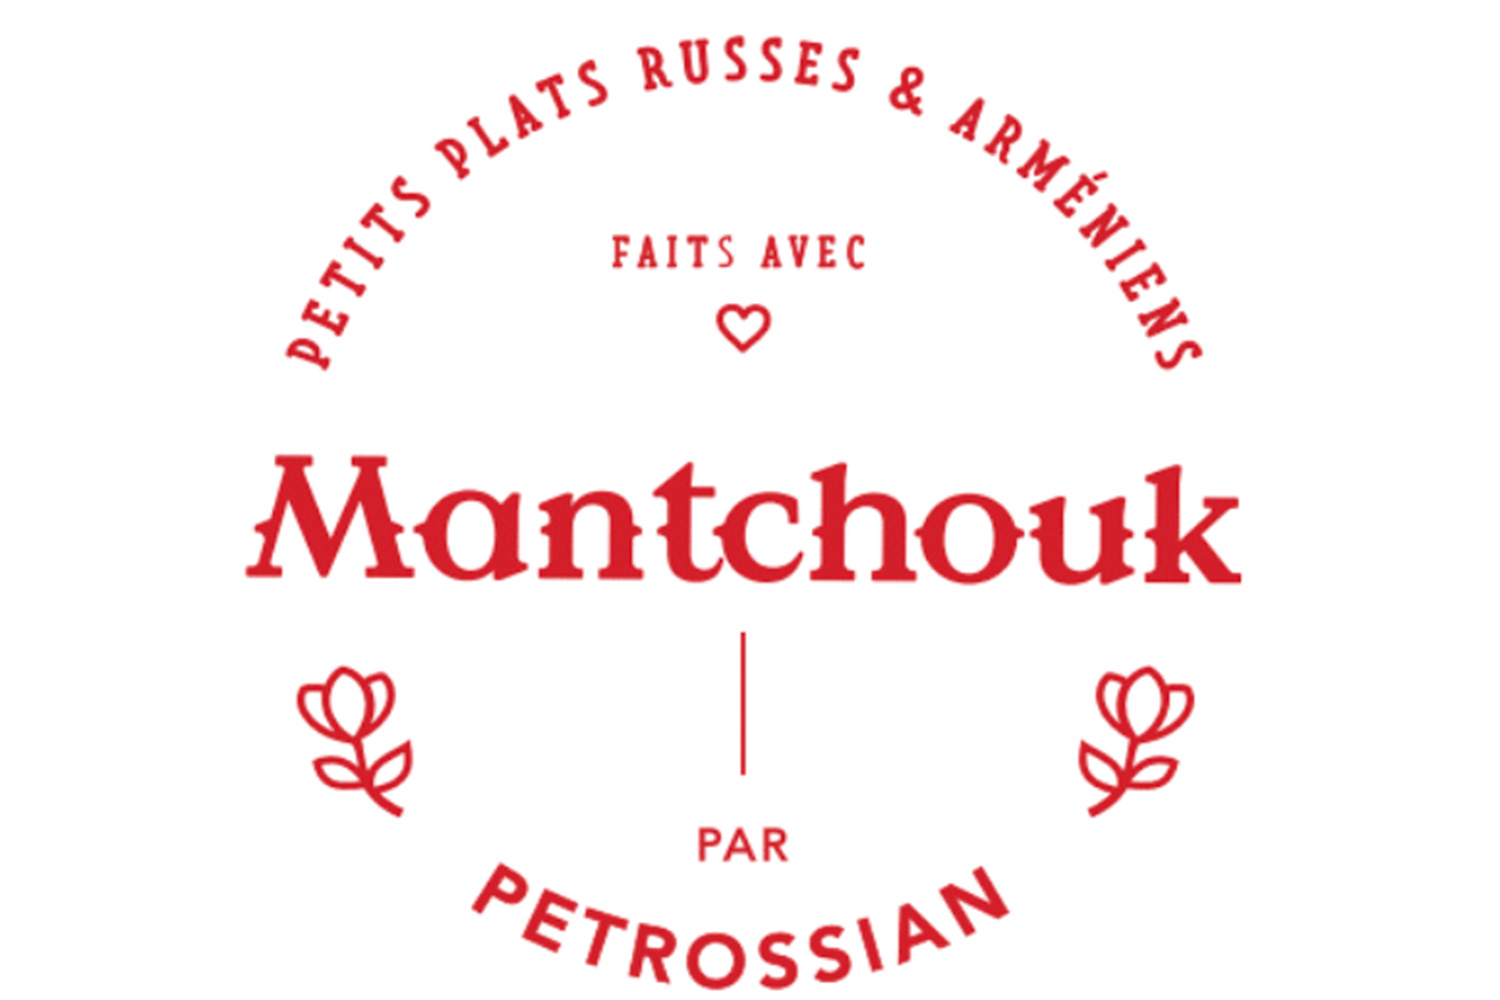 Mantchouk par Petrossian. հայ-ռուսական ավանդական խոհանոցը Փարիզում